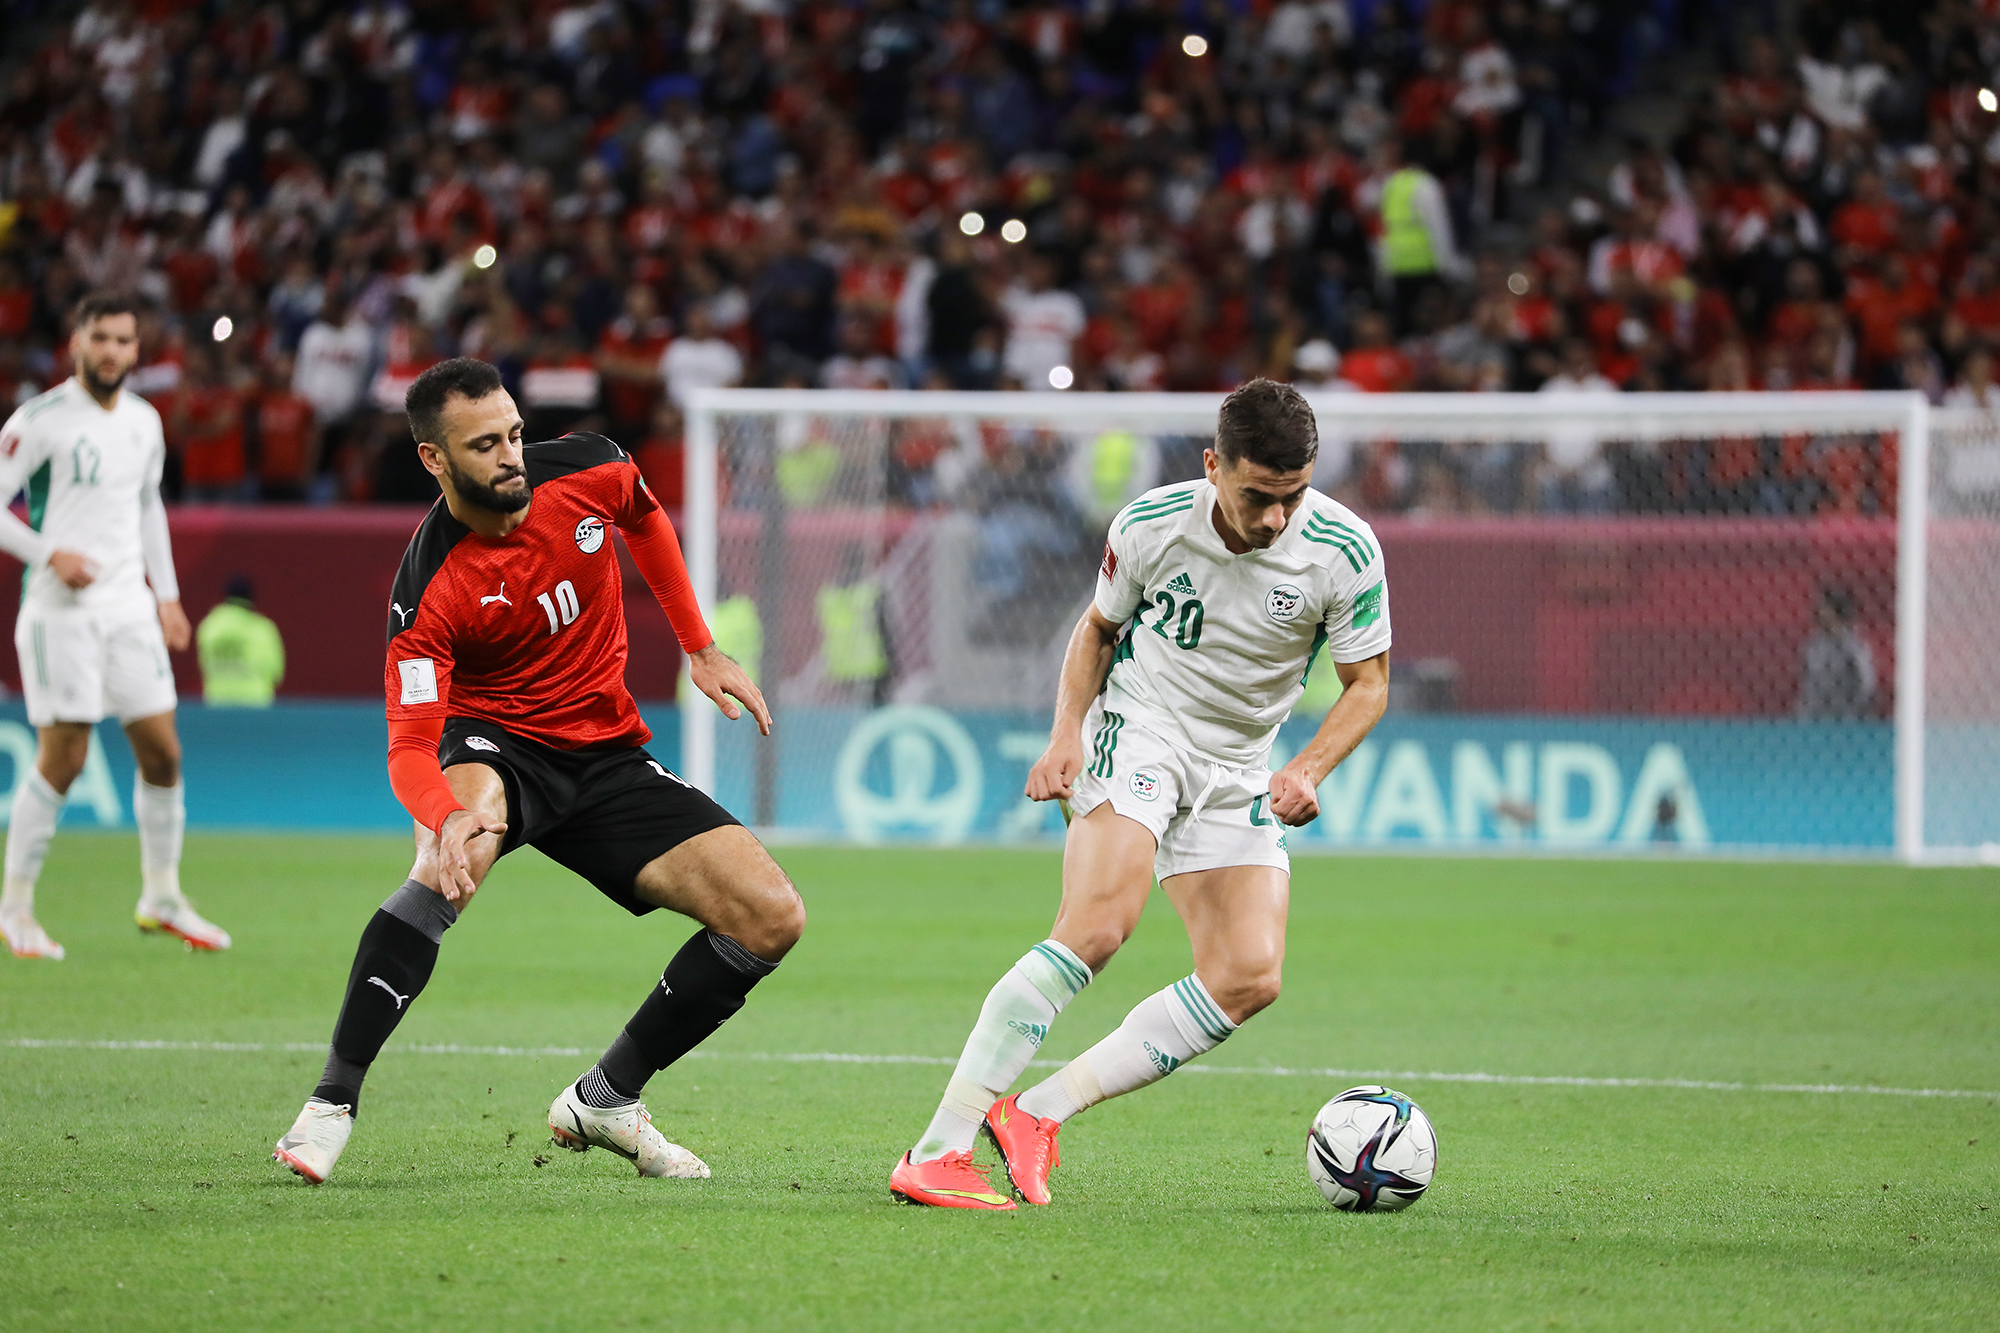 chetti dribble coupe arabe 2021 egypte algerie 1 1